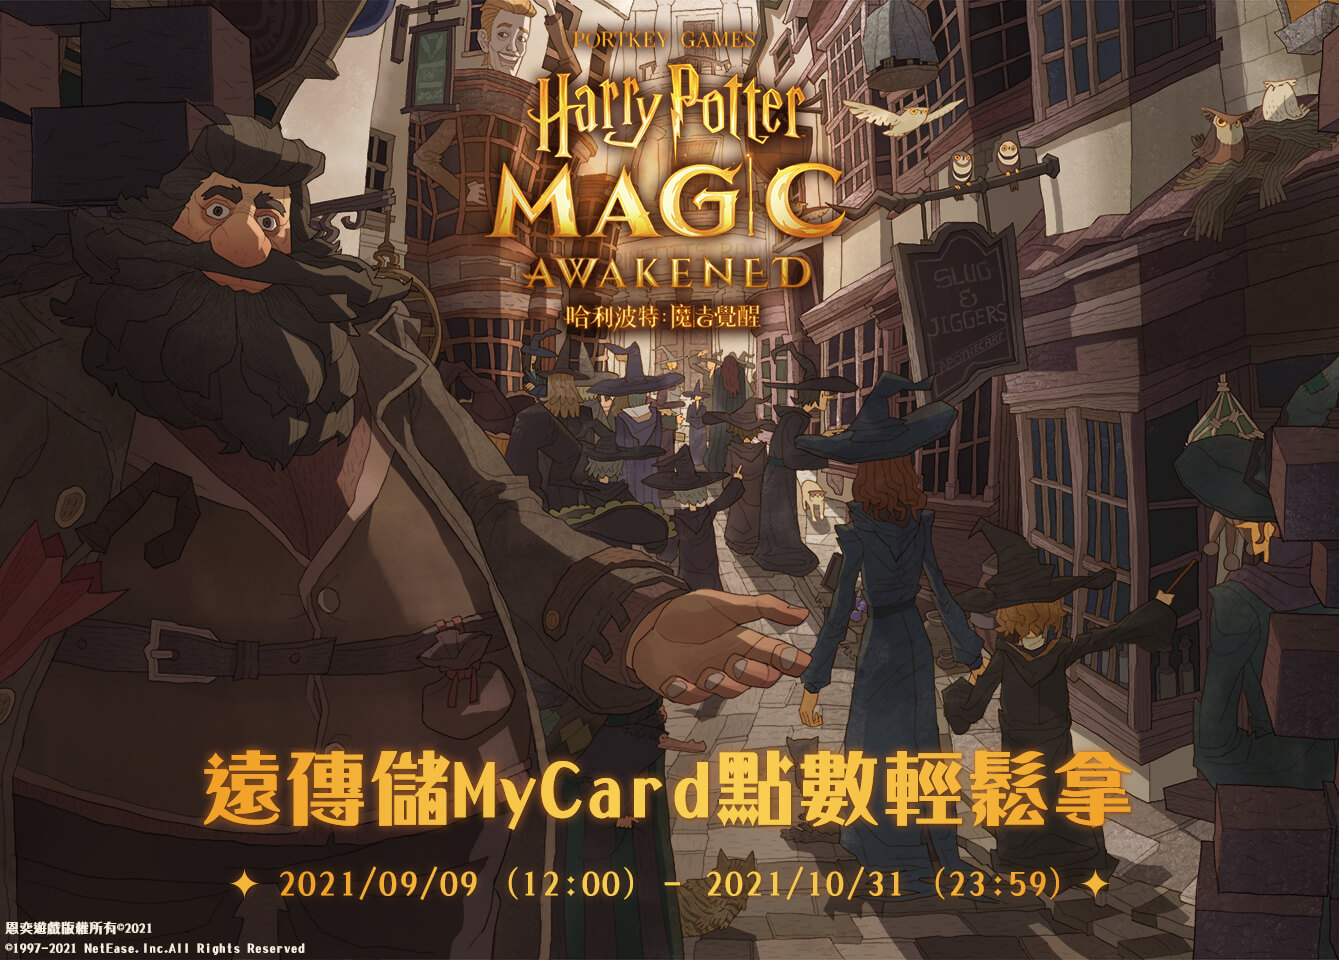   《哈利波特：魔法覺醒》MyCard儲值抽點數 | 遠傳電信